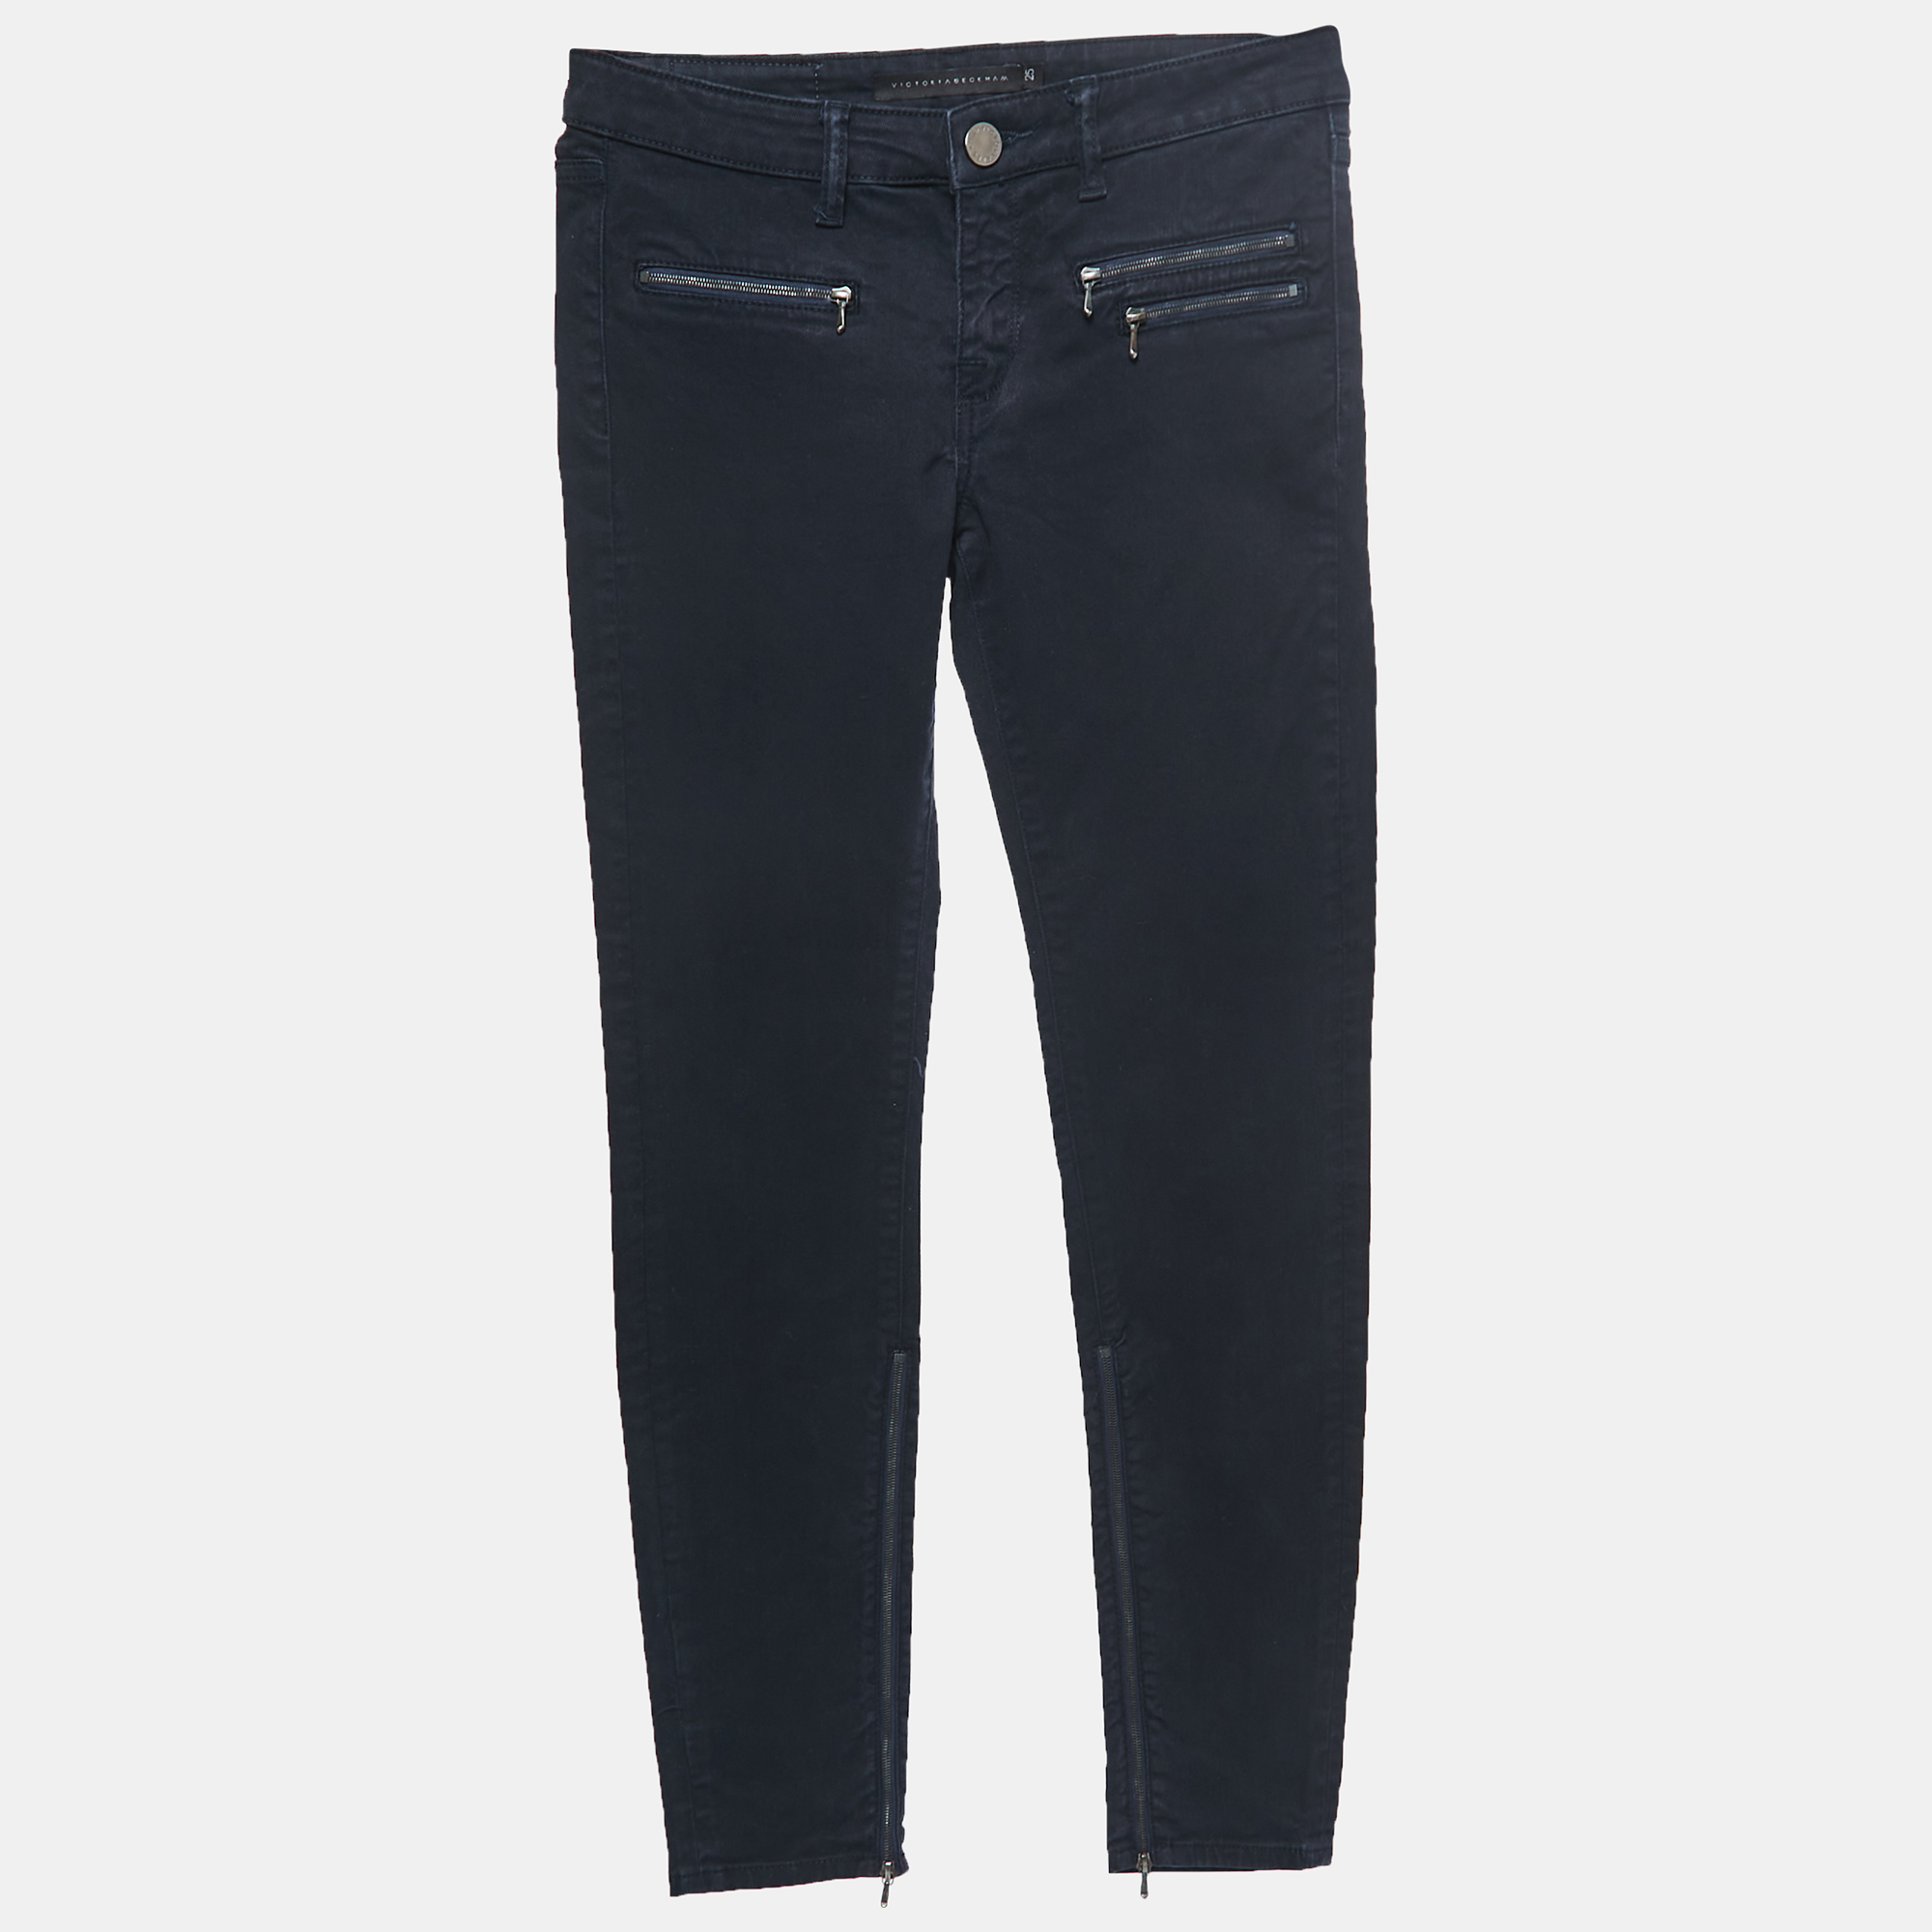 Victoria Beckham Navy Blue Denim Slim Fit Jeans S Waist 25